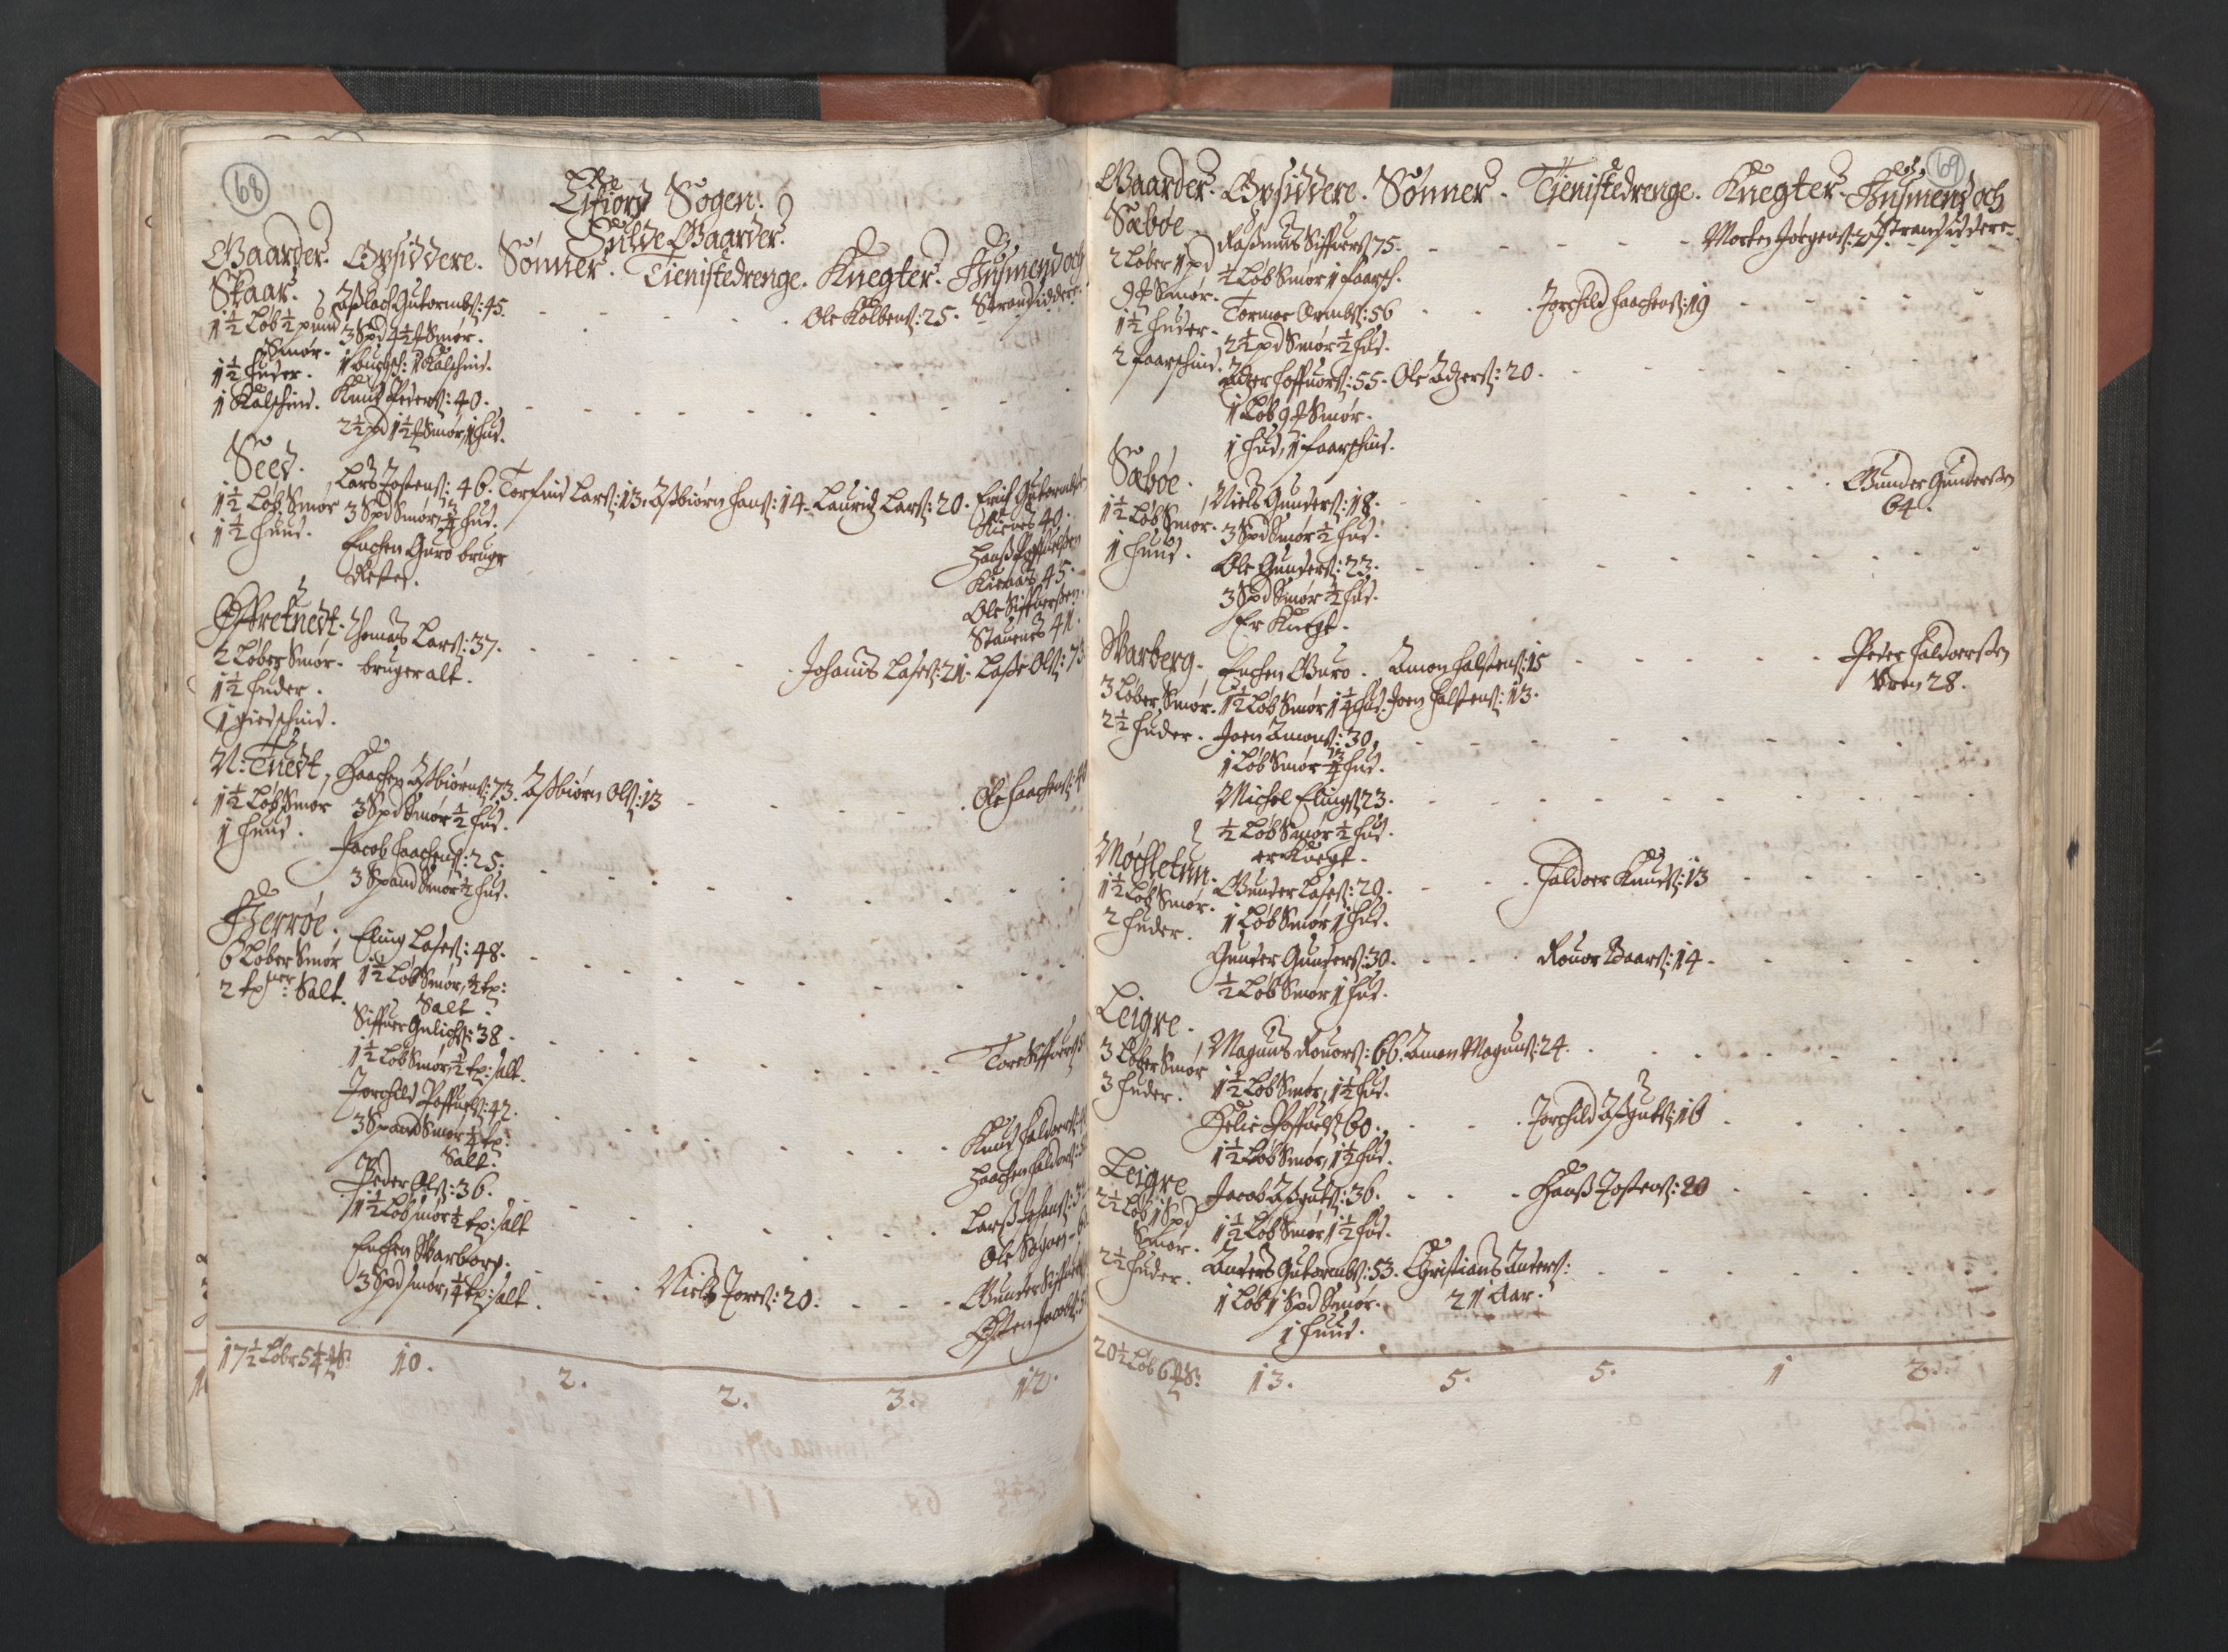 RA, Bailiff's Census 1664-1666, no. 14: Hardanger len, Ytre Sogn fogderi and Indre Sogn fogderi, 1664-1665, p. 68-69